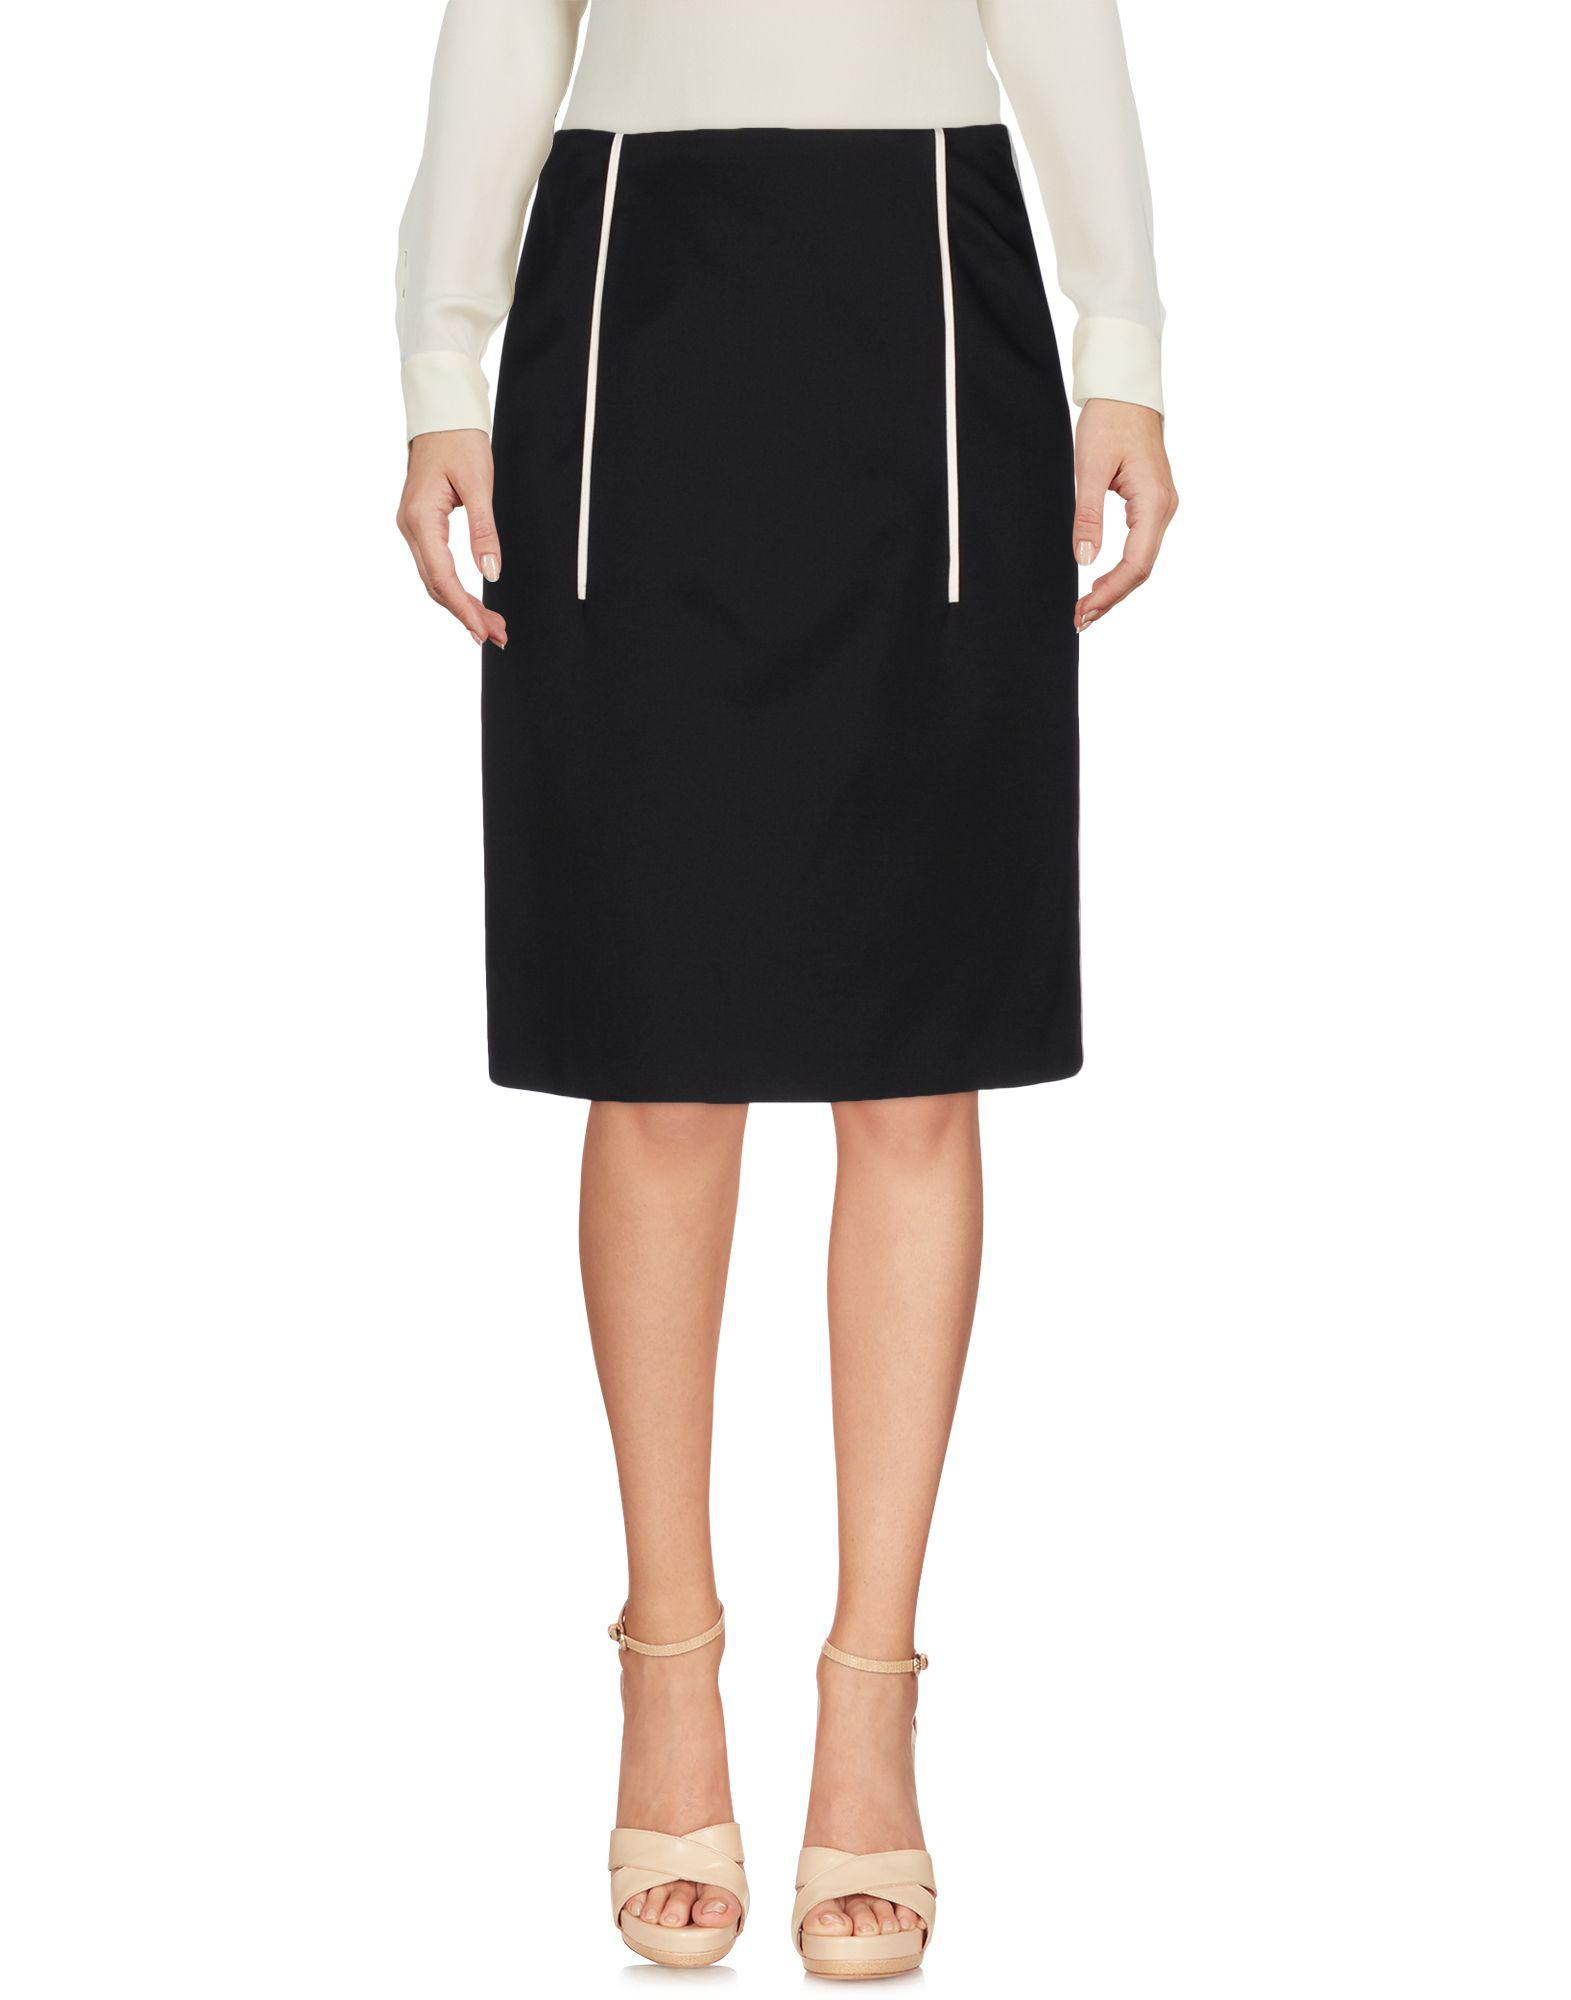 Prada Wool Knee Length Skirt in Black - Lyst